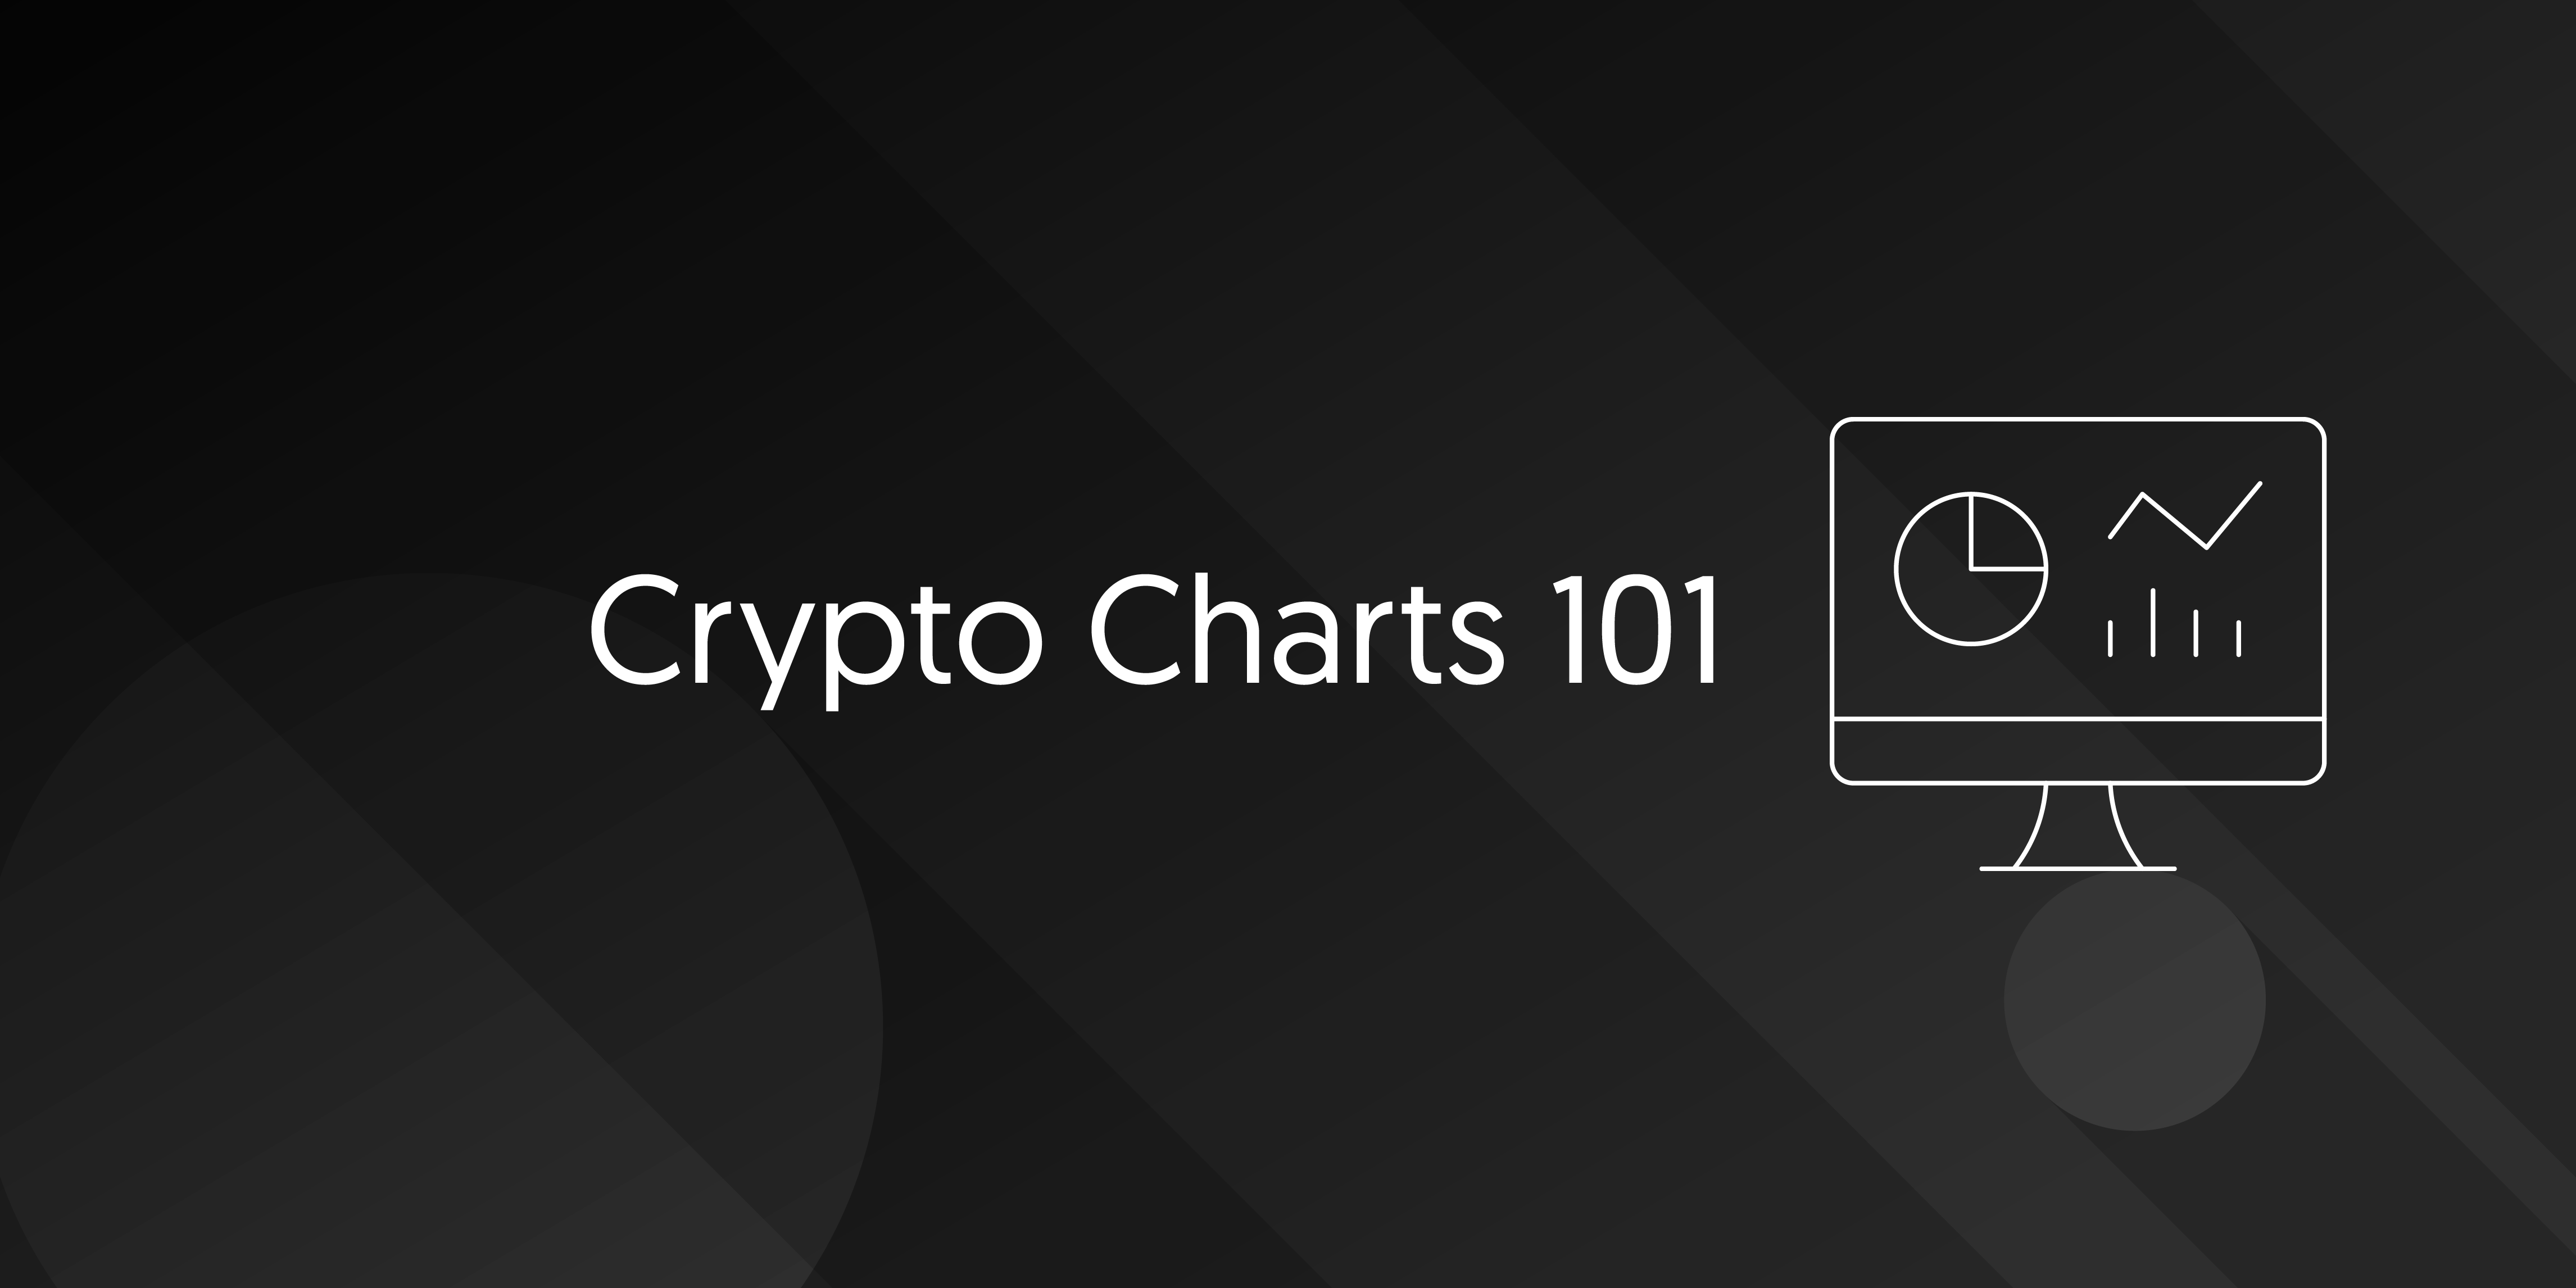 Crypto Charts